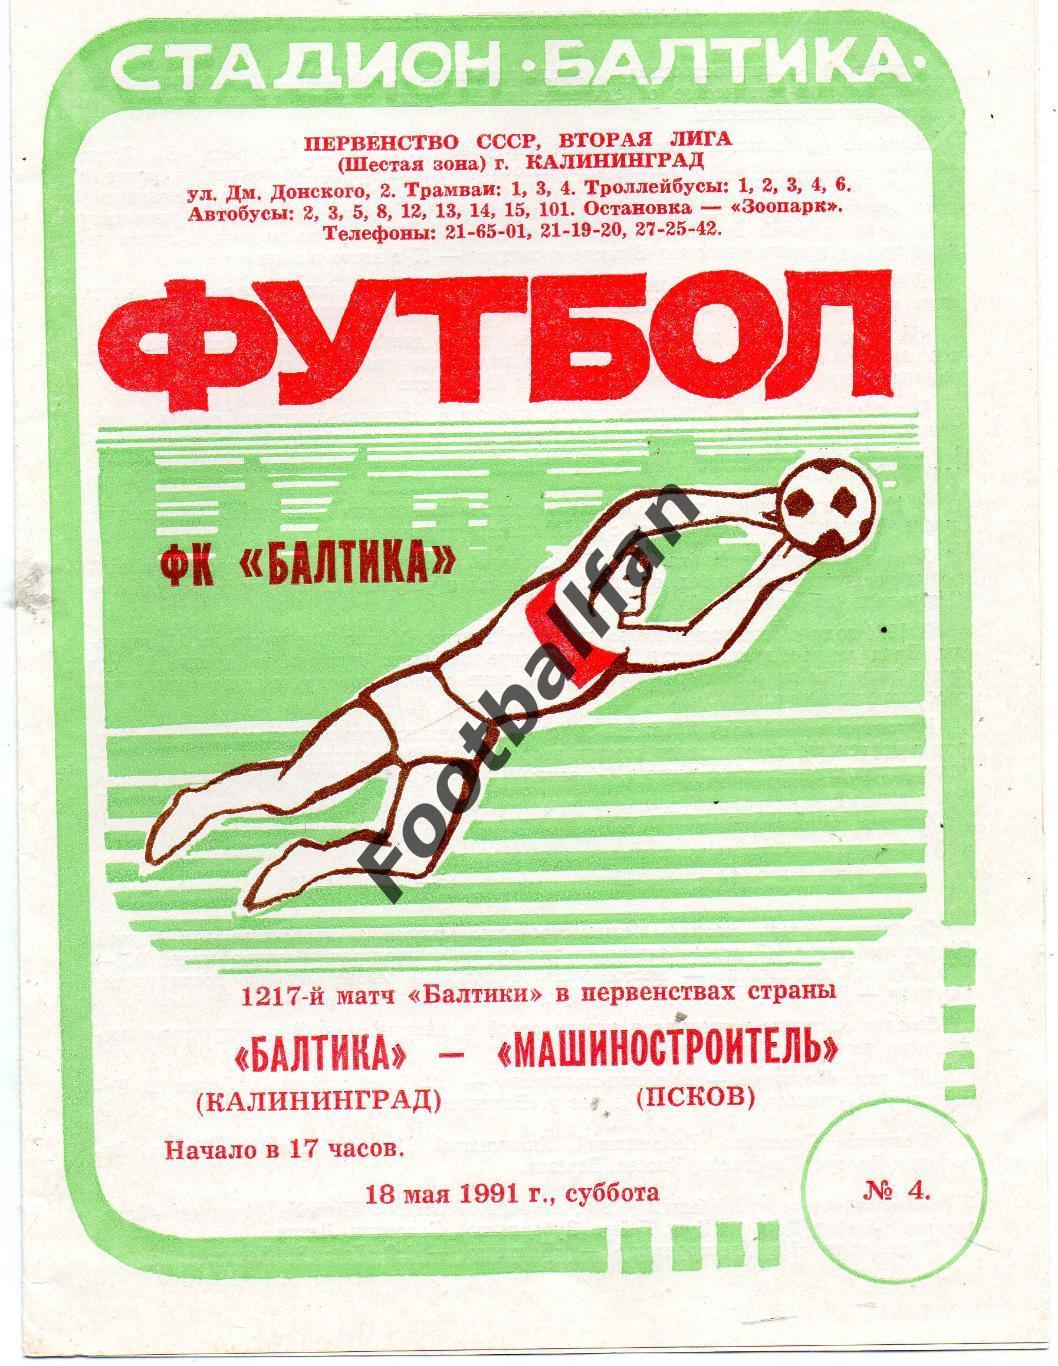 Балтика Калининград - Машиностроитель Псков 18.05.1991